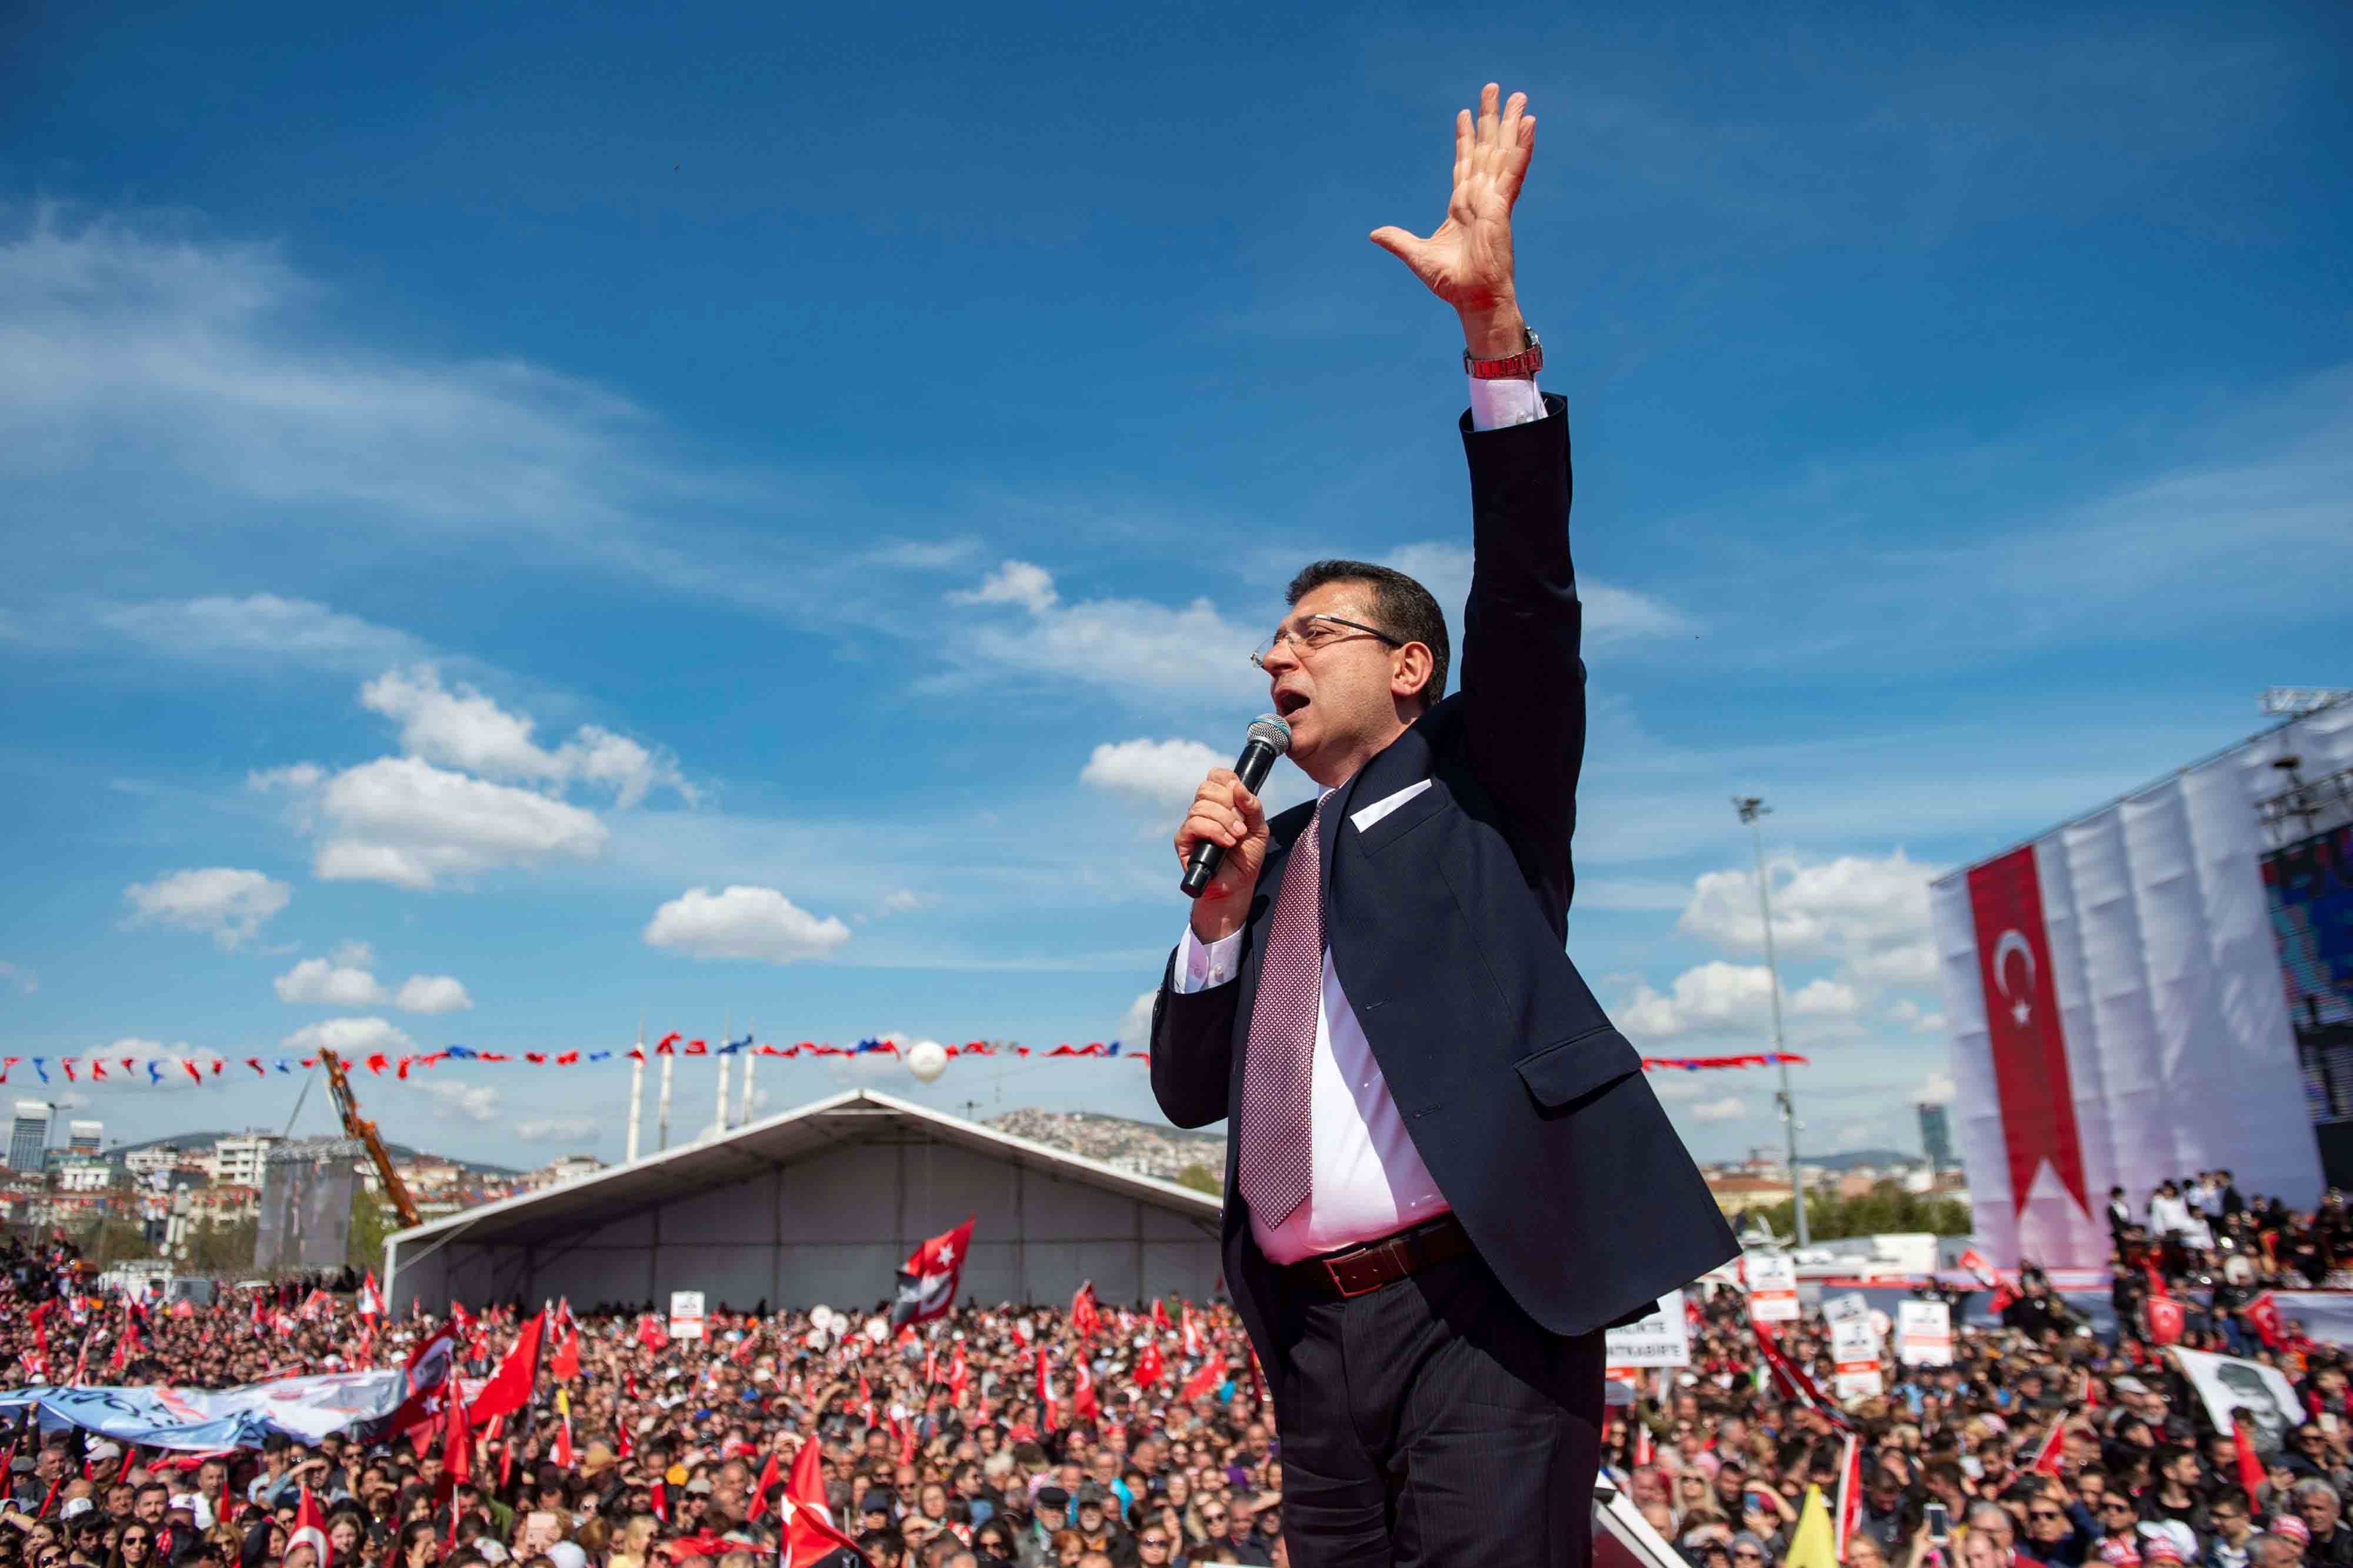 إعادة انتخابات بلدية إسطنبول أكبر دليل على تصميم أردوغان على تقويض الديمقراطية في تركيا